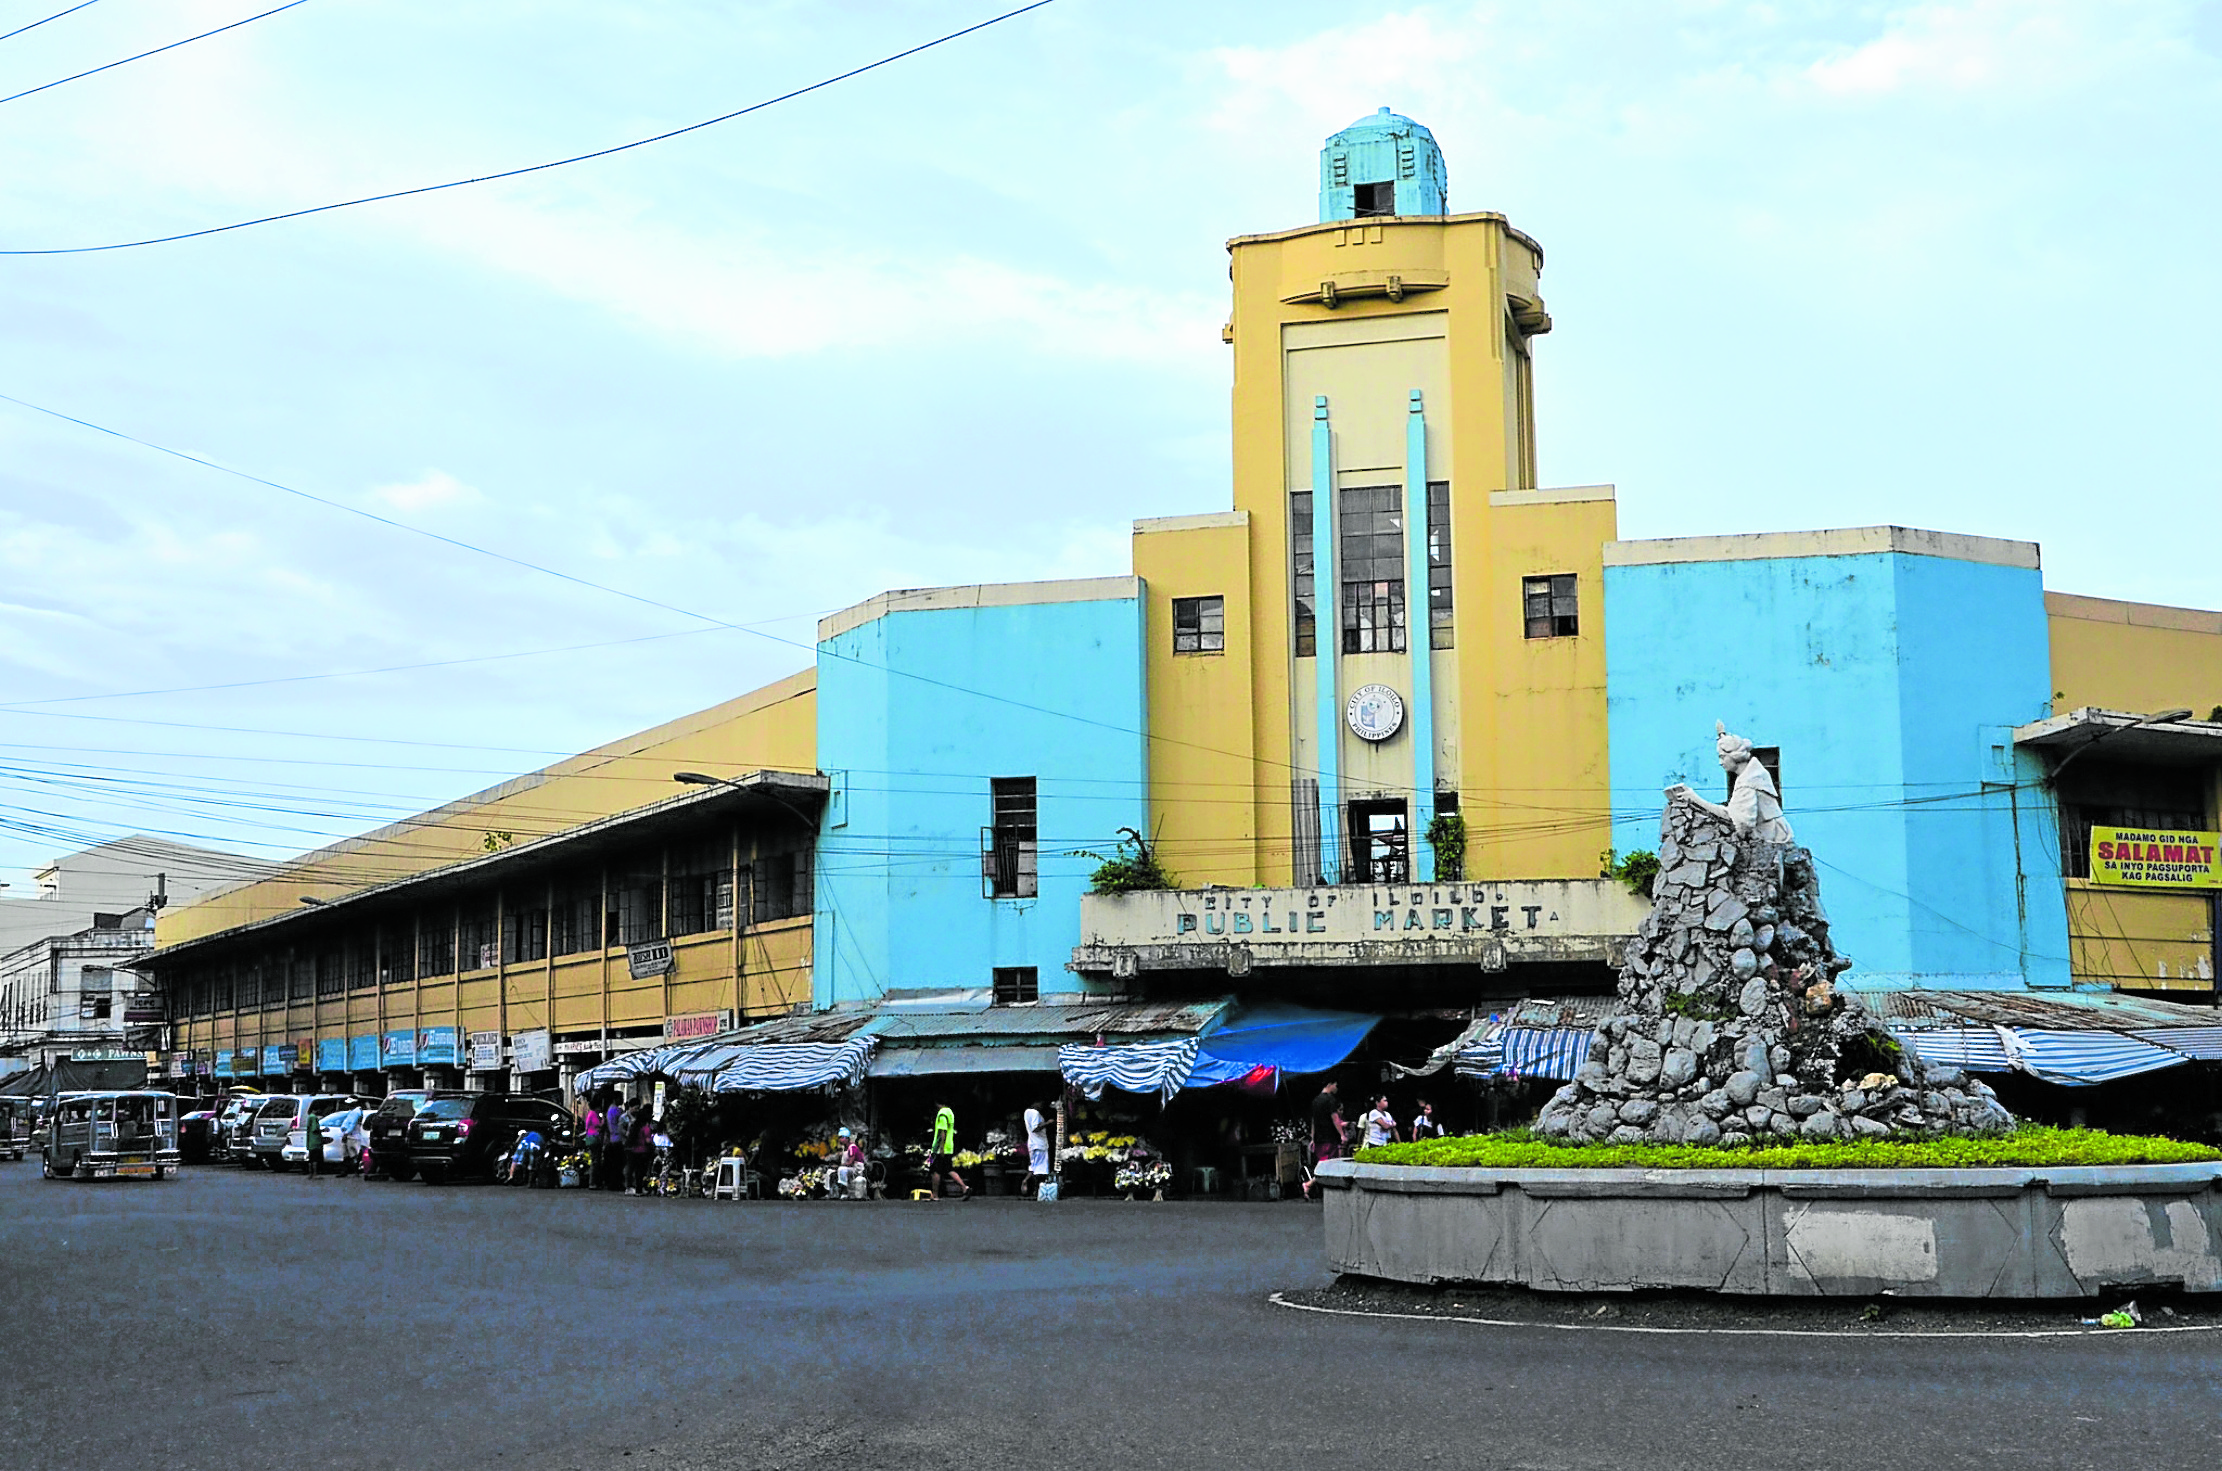 Iloilo City mayor defends demolition of historic market facade